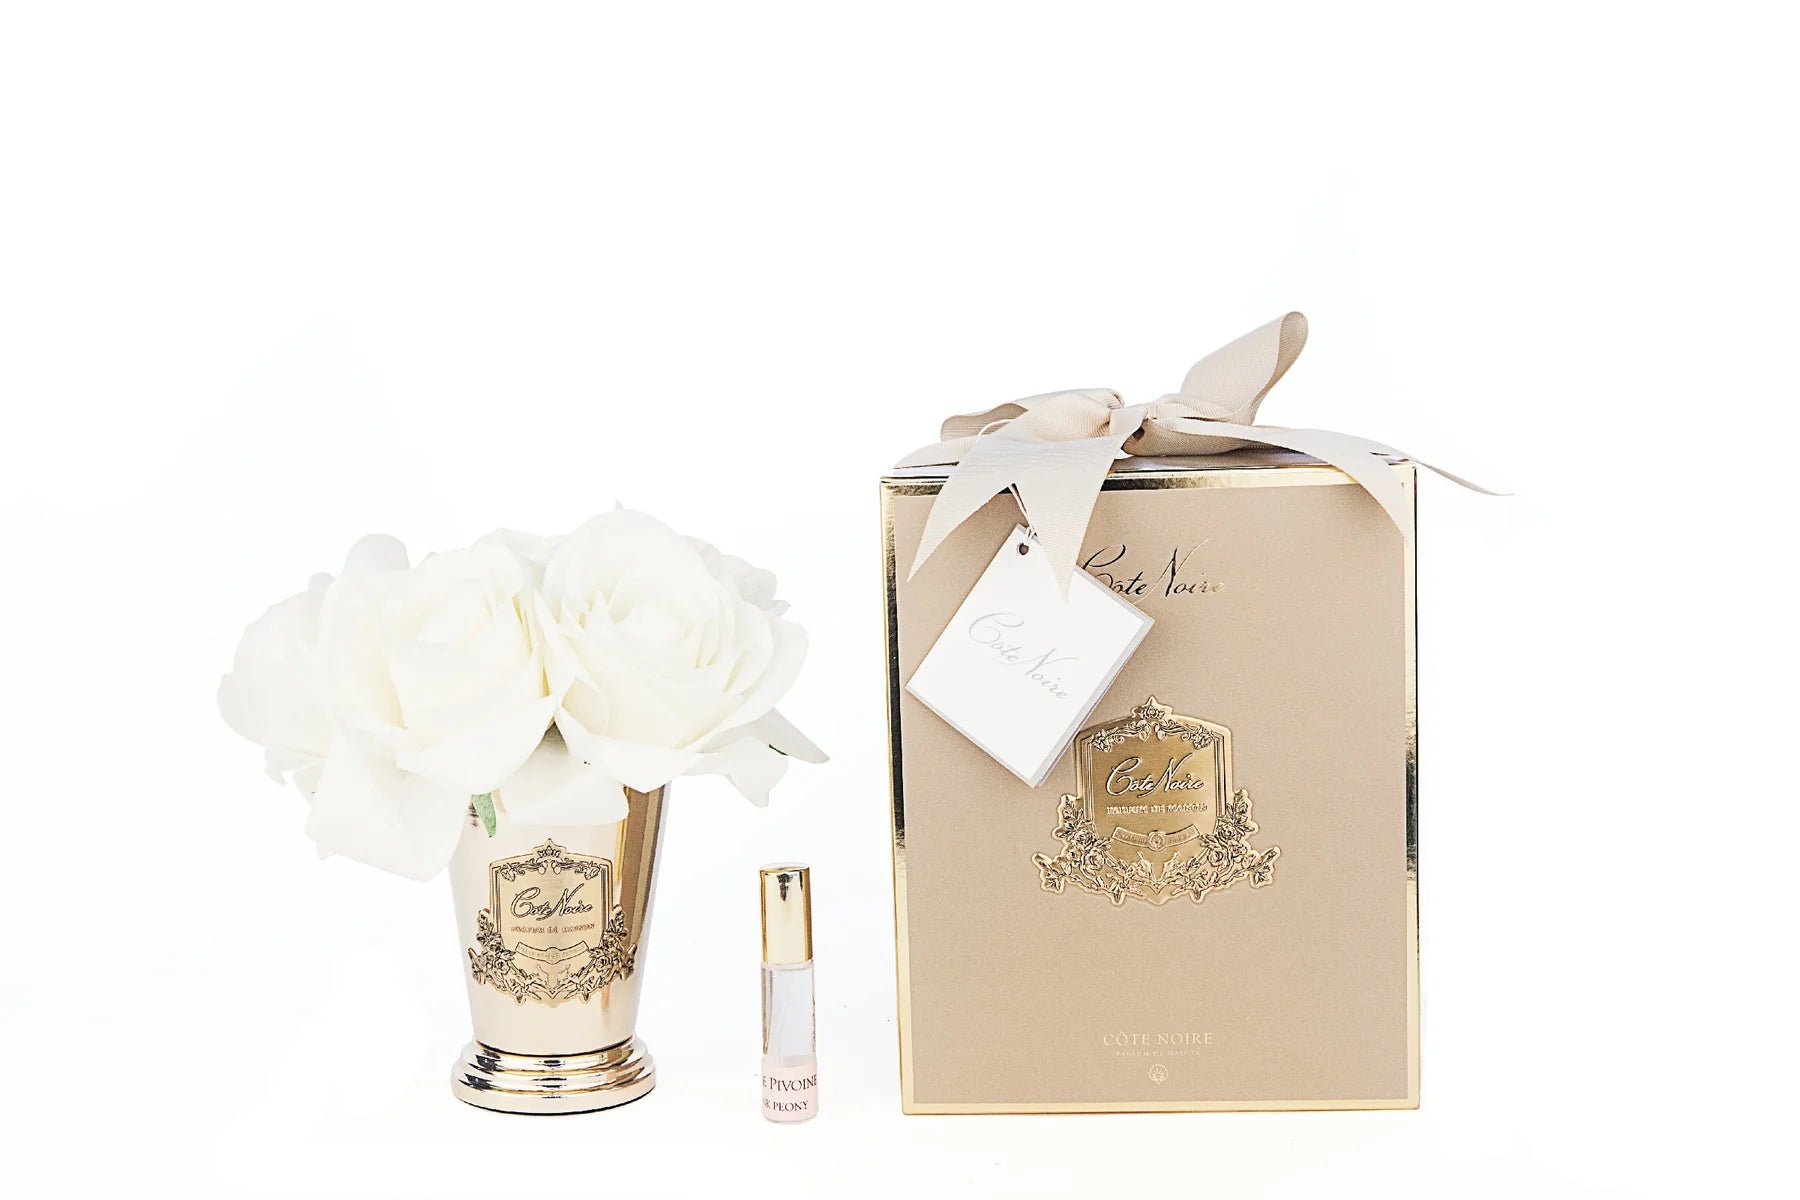 sieben weisse rosen in goldenem kelch mit inschrift. dazu zwei parfumsprays und goldene geschenkbox mit schleife.